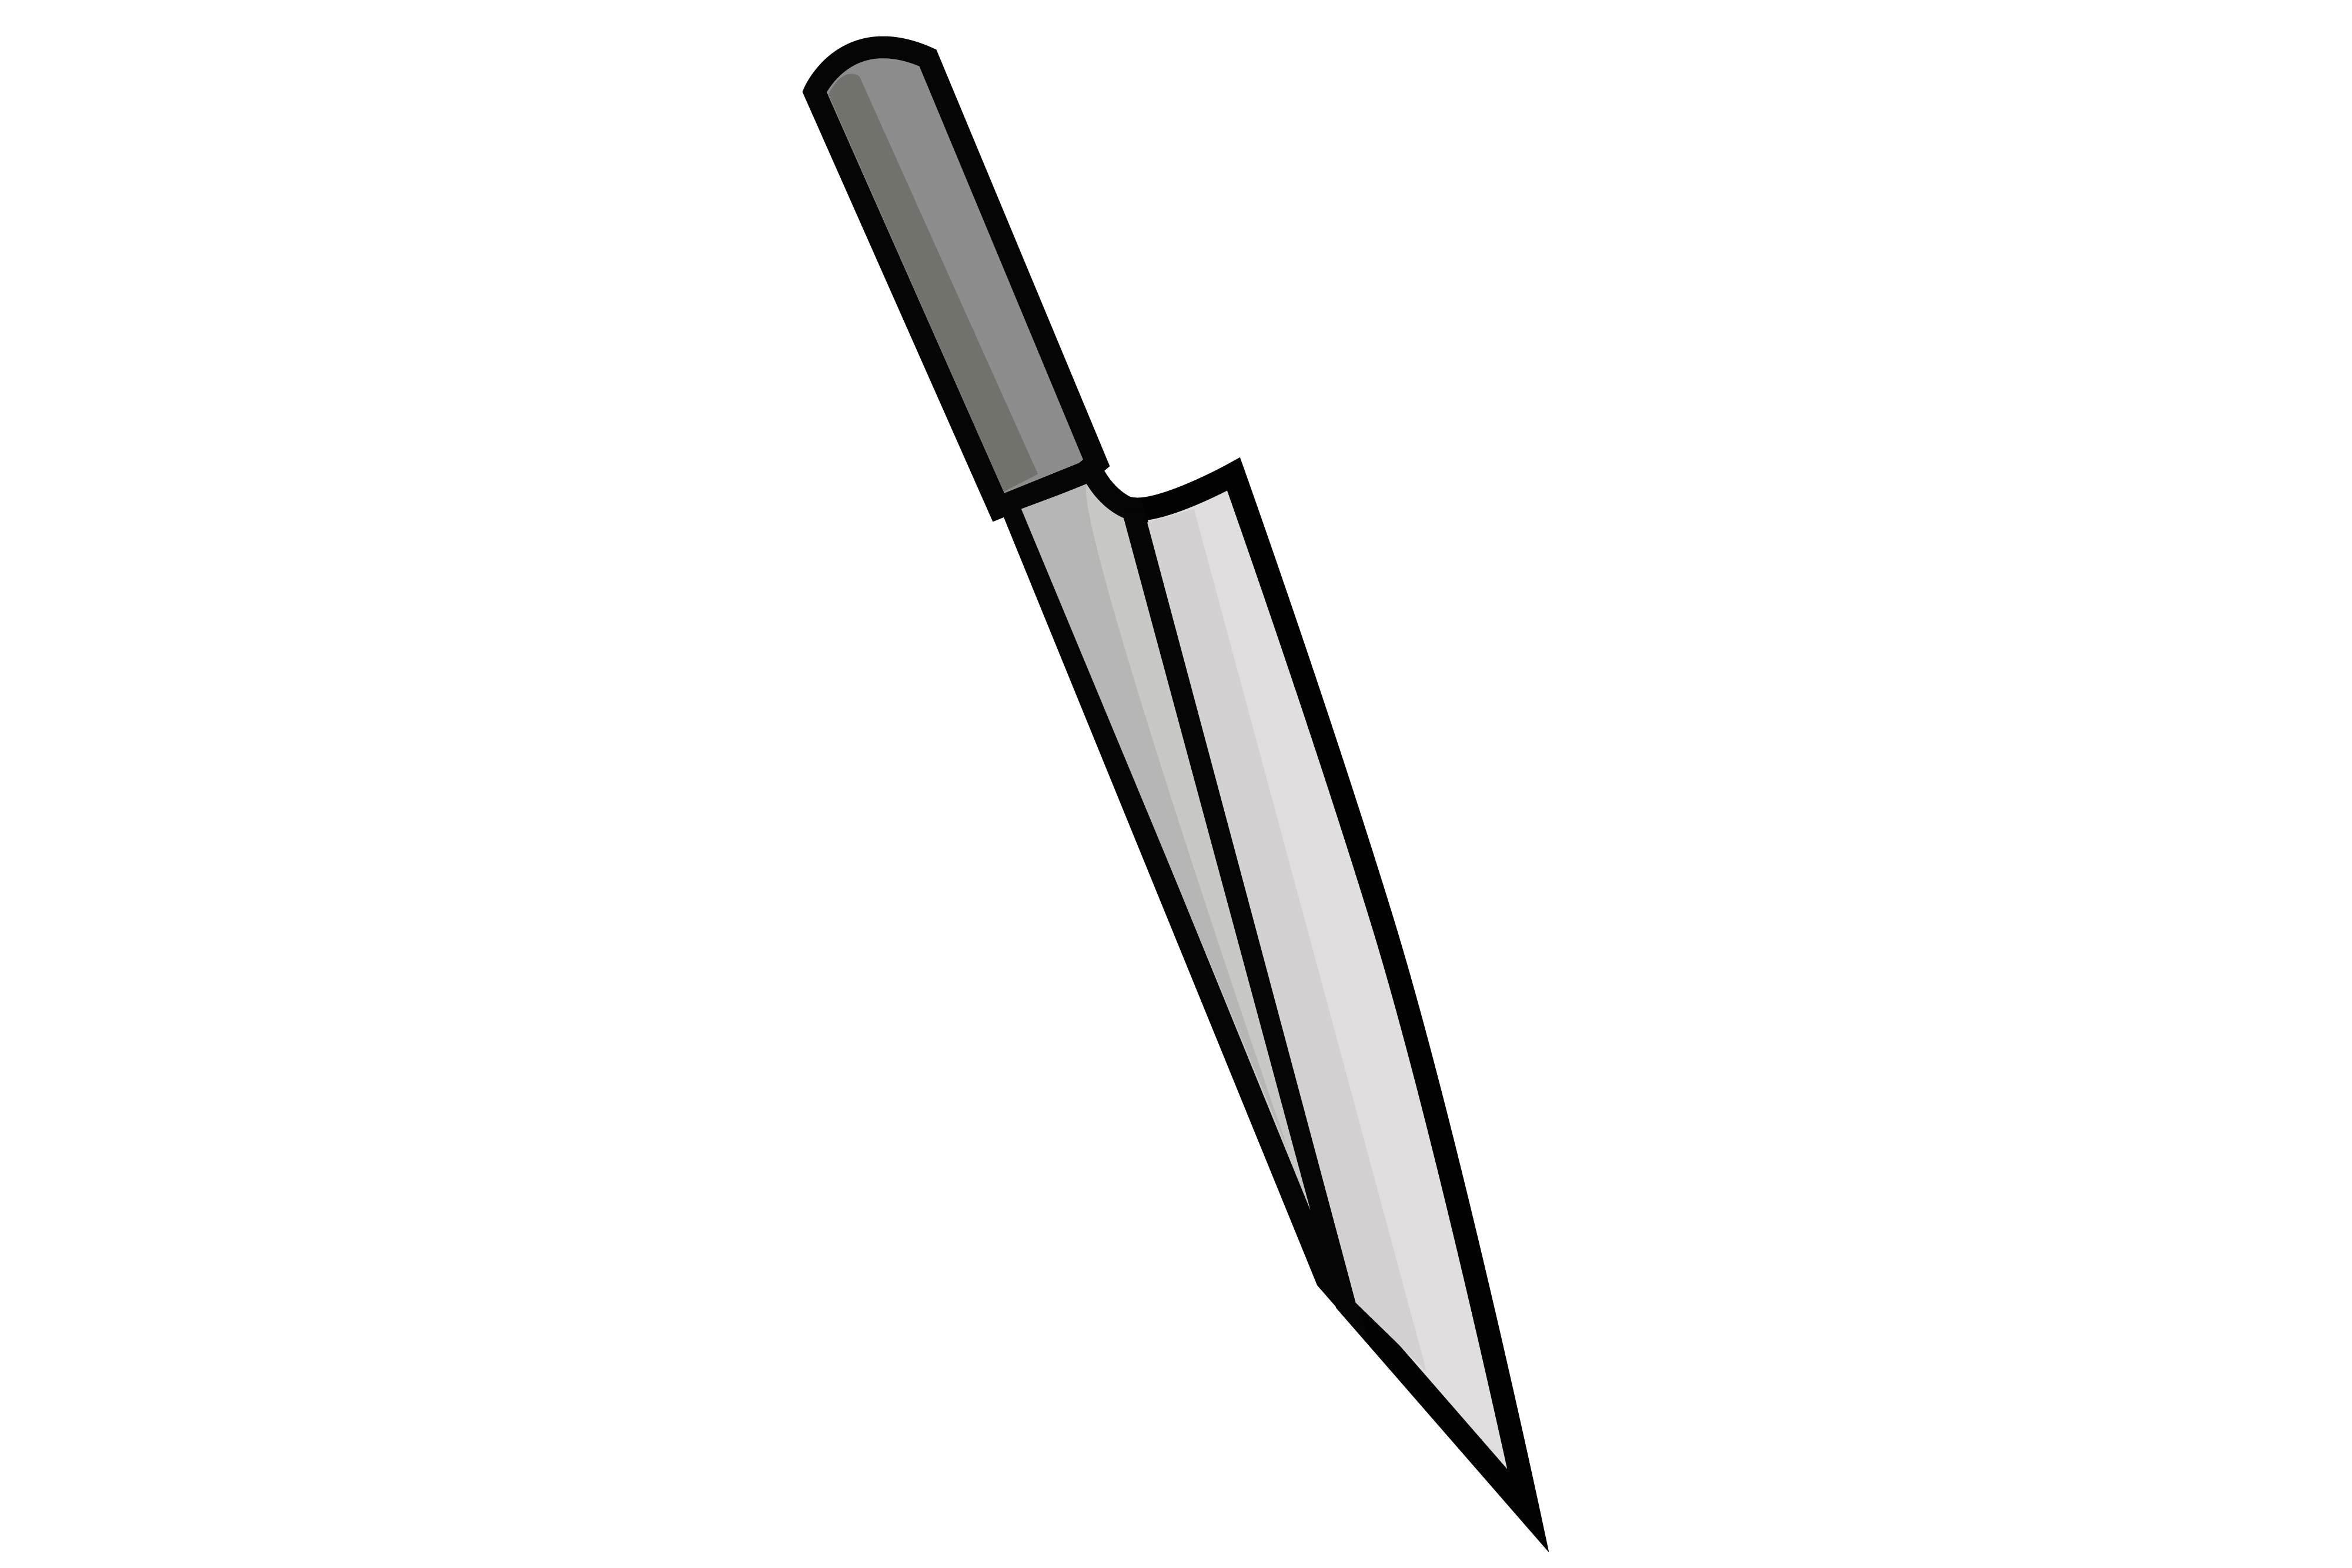 Sharp Knife Sticker Vector Illustration